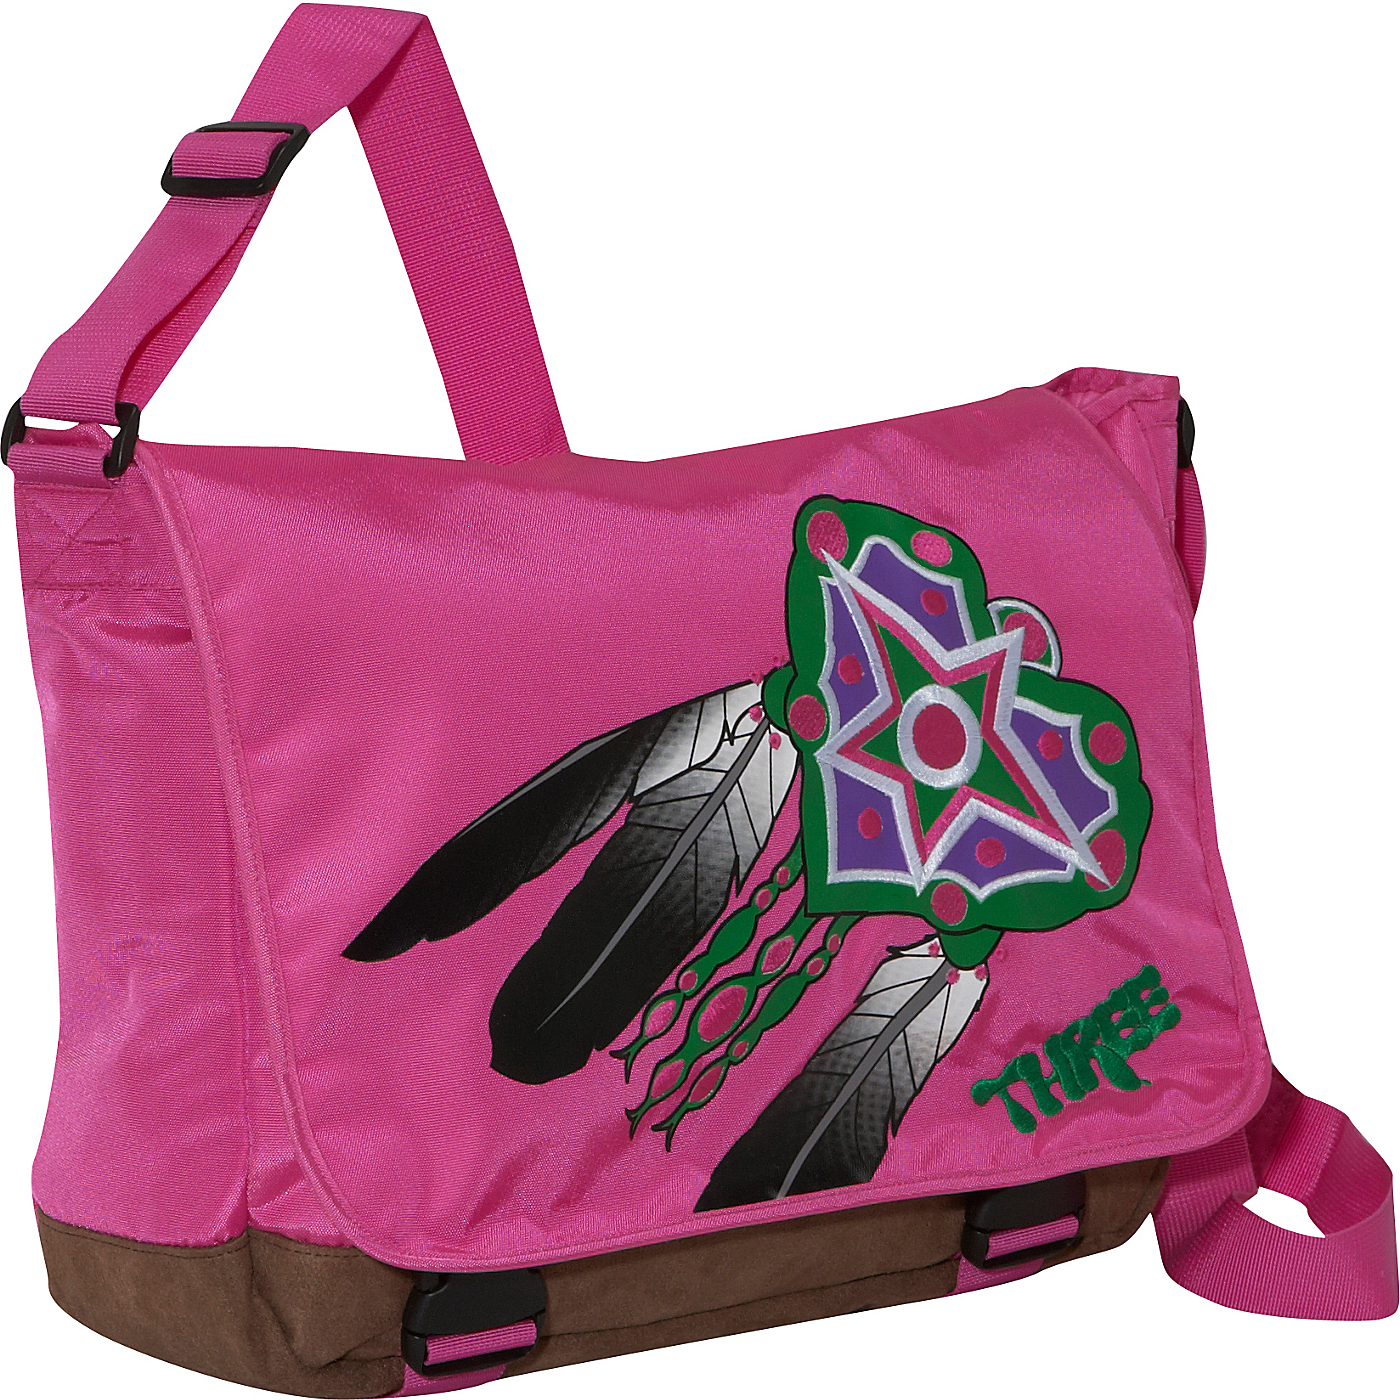 pink laptop messenger bags   